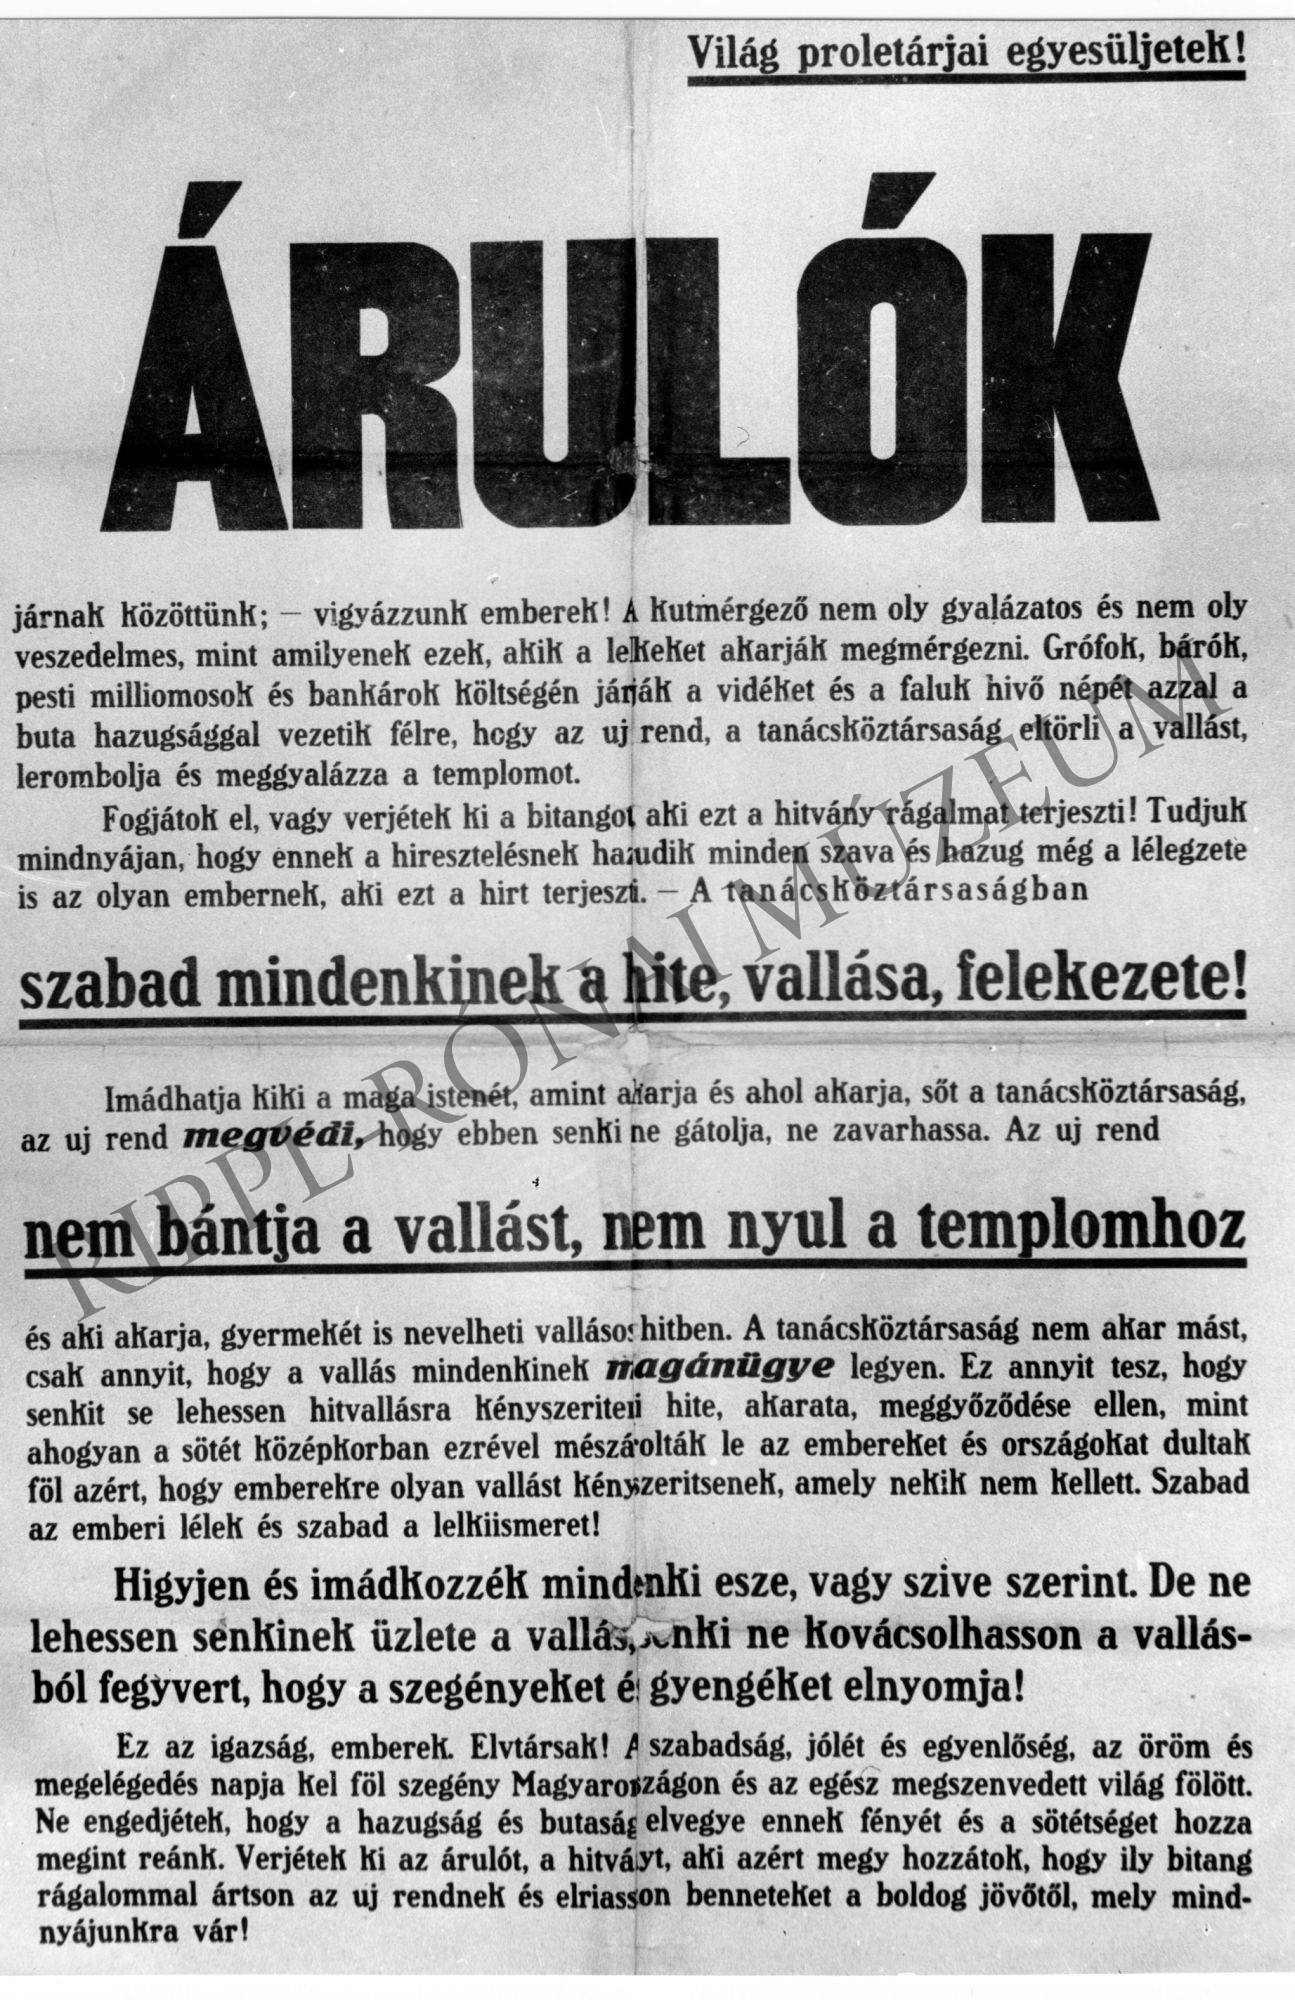 1919-es röplap: "Árulók" (vallási toleranciát hirdet, ugyanakkor azt is, hogy ne kovácsolhasson senki a vallásából fegyvert) (Rippl-Rónai Múzeum CC BY-NC-SA)